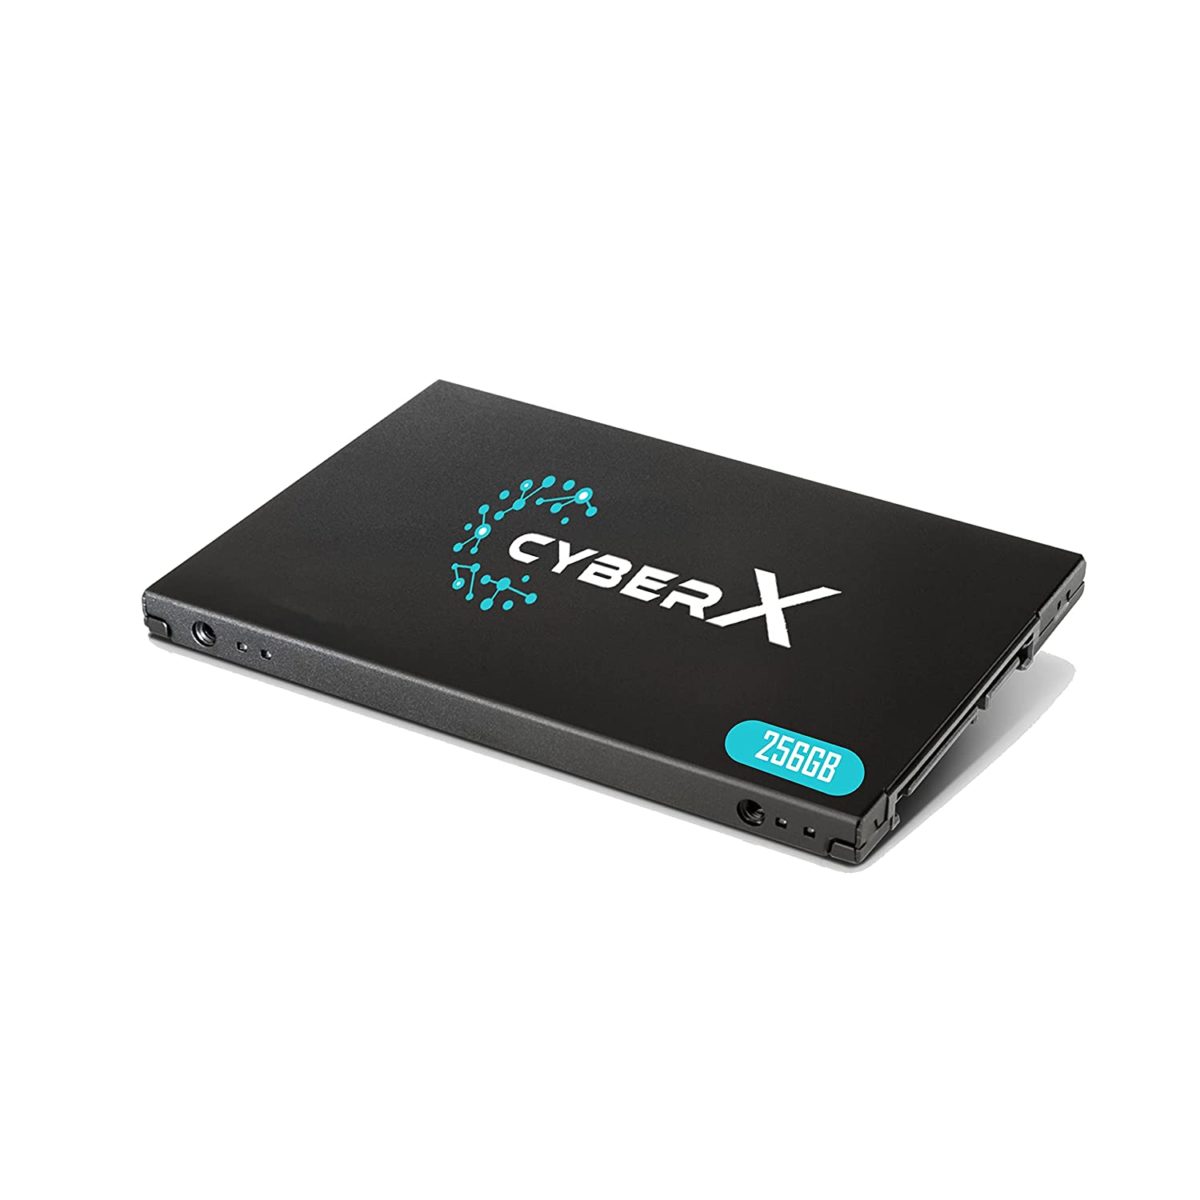 CyberX 256GB 2.5 inch M.2